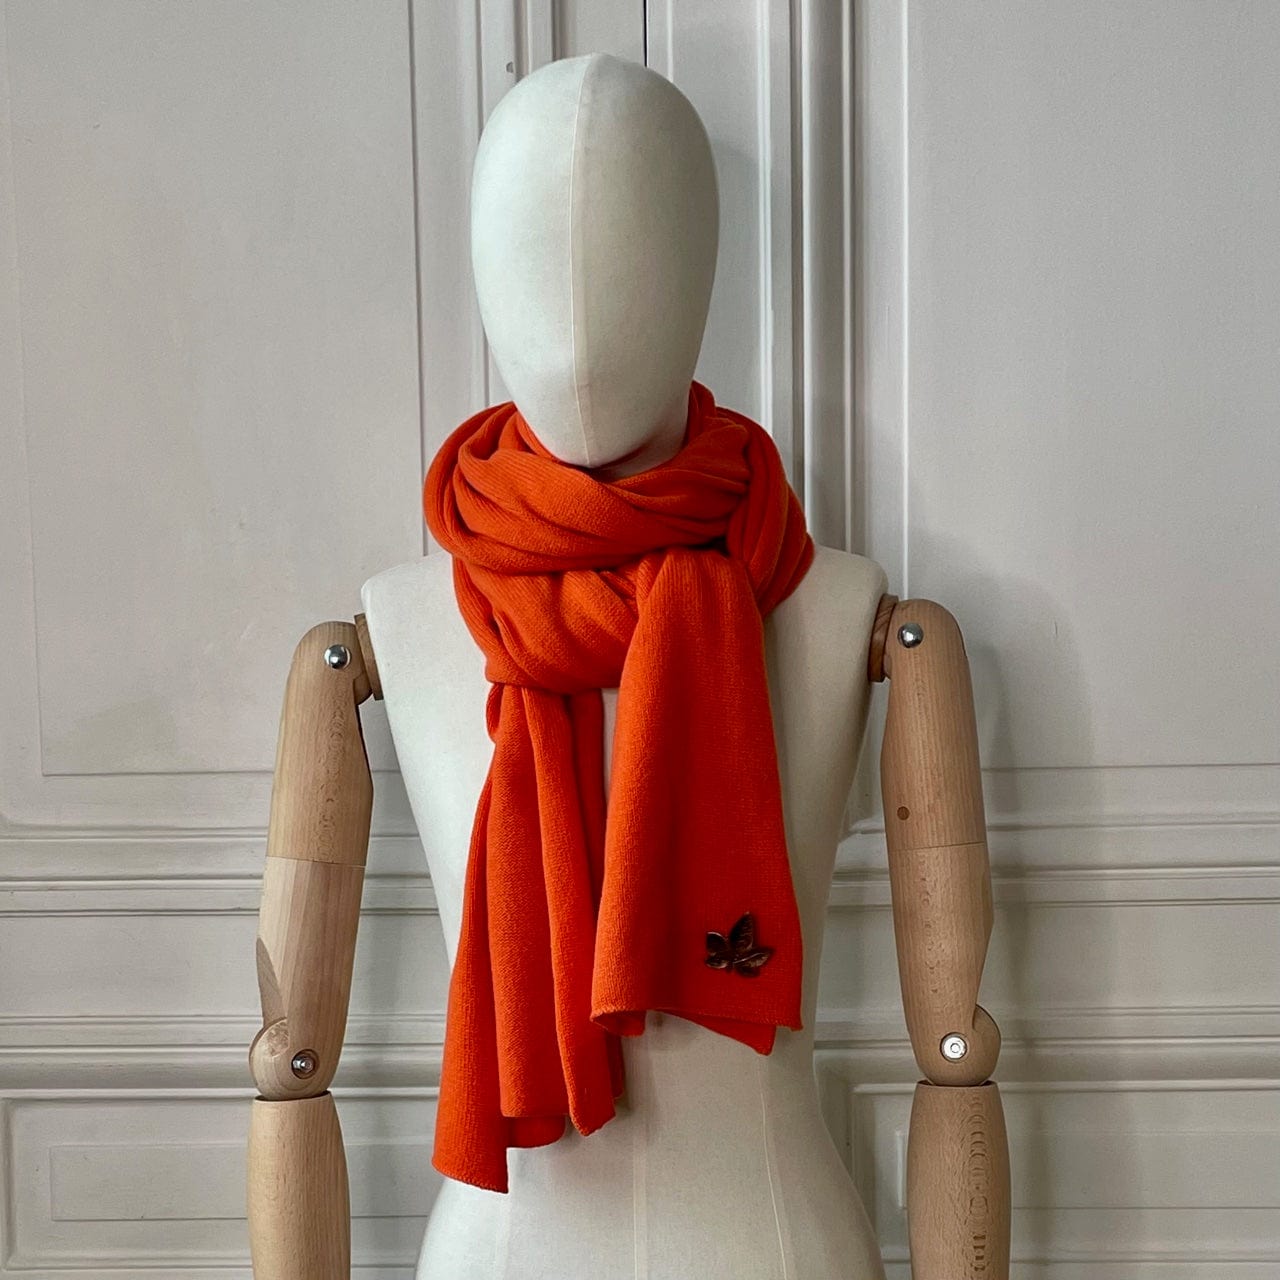 Echarpe orange tricotée en France 250x60 cm 100% cachemire maille serrée avec broche feuille de vigne